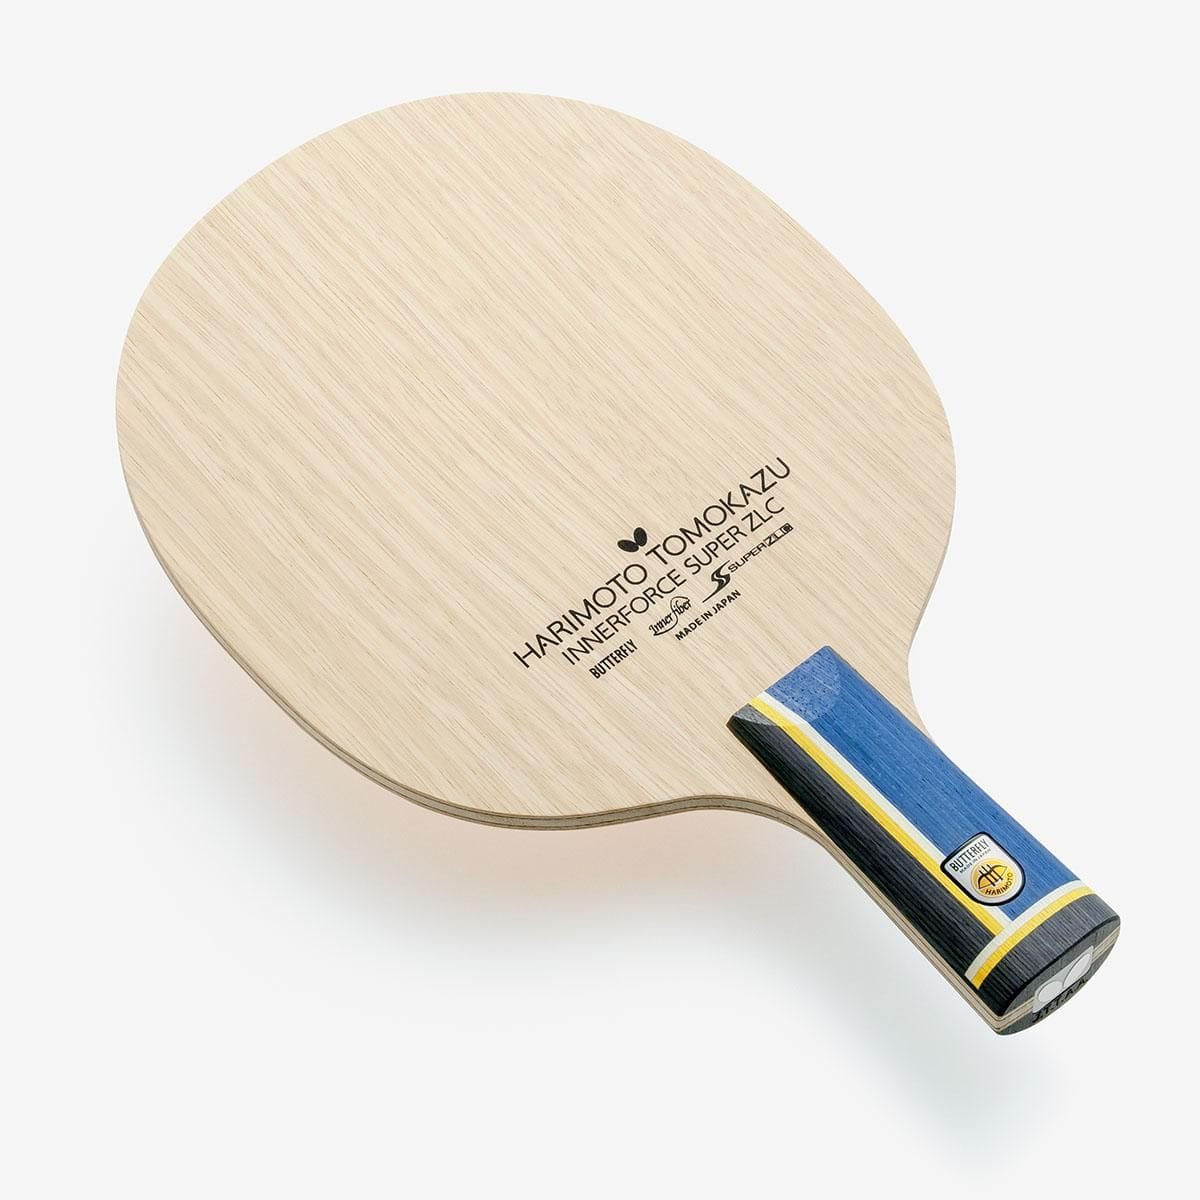 ウェルショップバタフライ Butterfly 卓球用ペンホルダーラケット 24040 張本智和 SUPER インナーフォース ZLC-CS